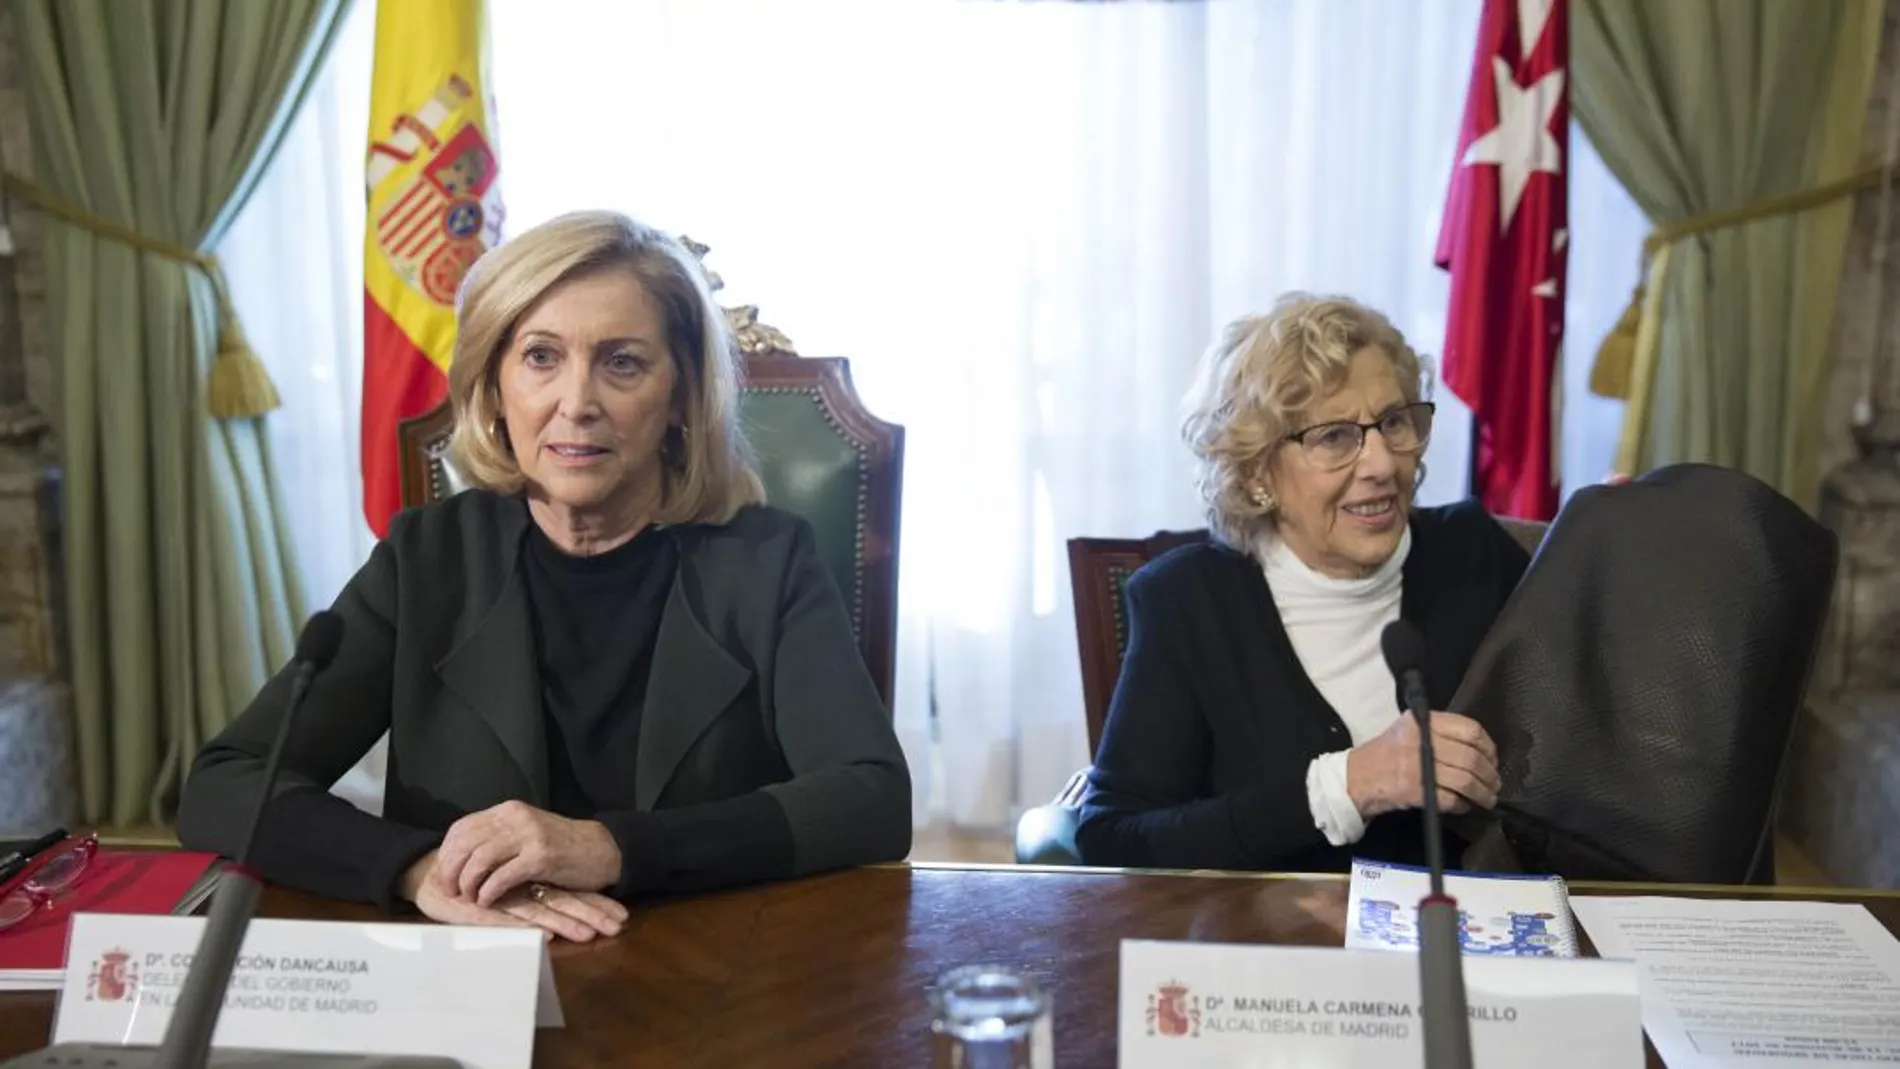 La delegada del Gobierno en Madrid, Concepción Dancausa, junto a Manuela Carmena.